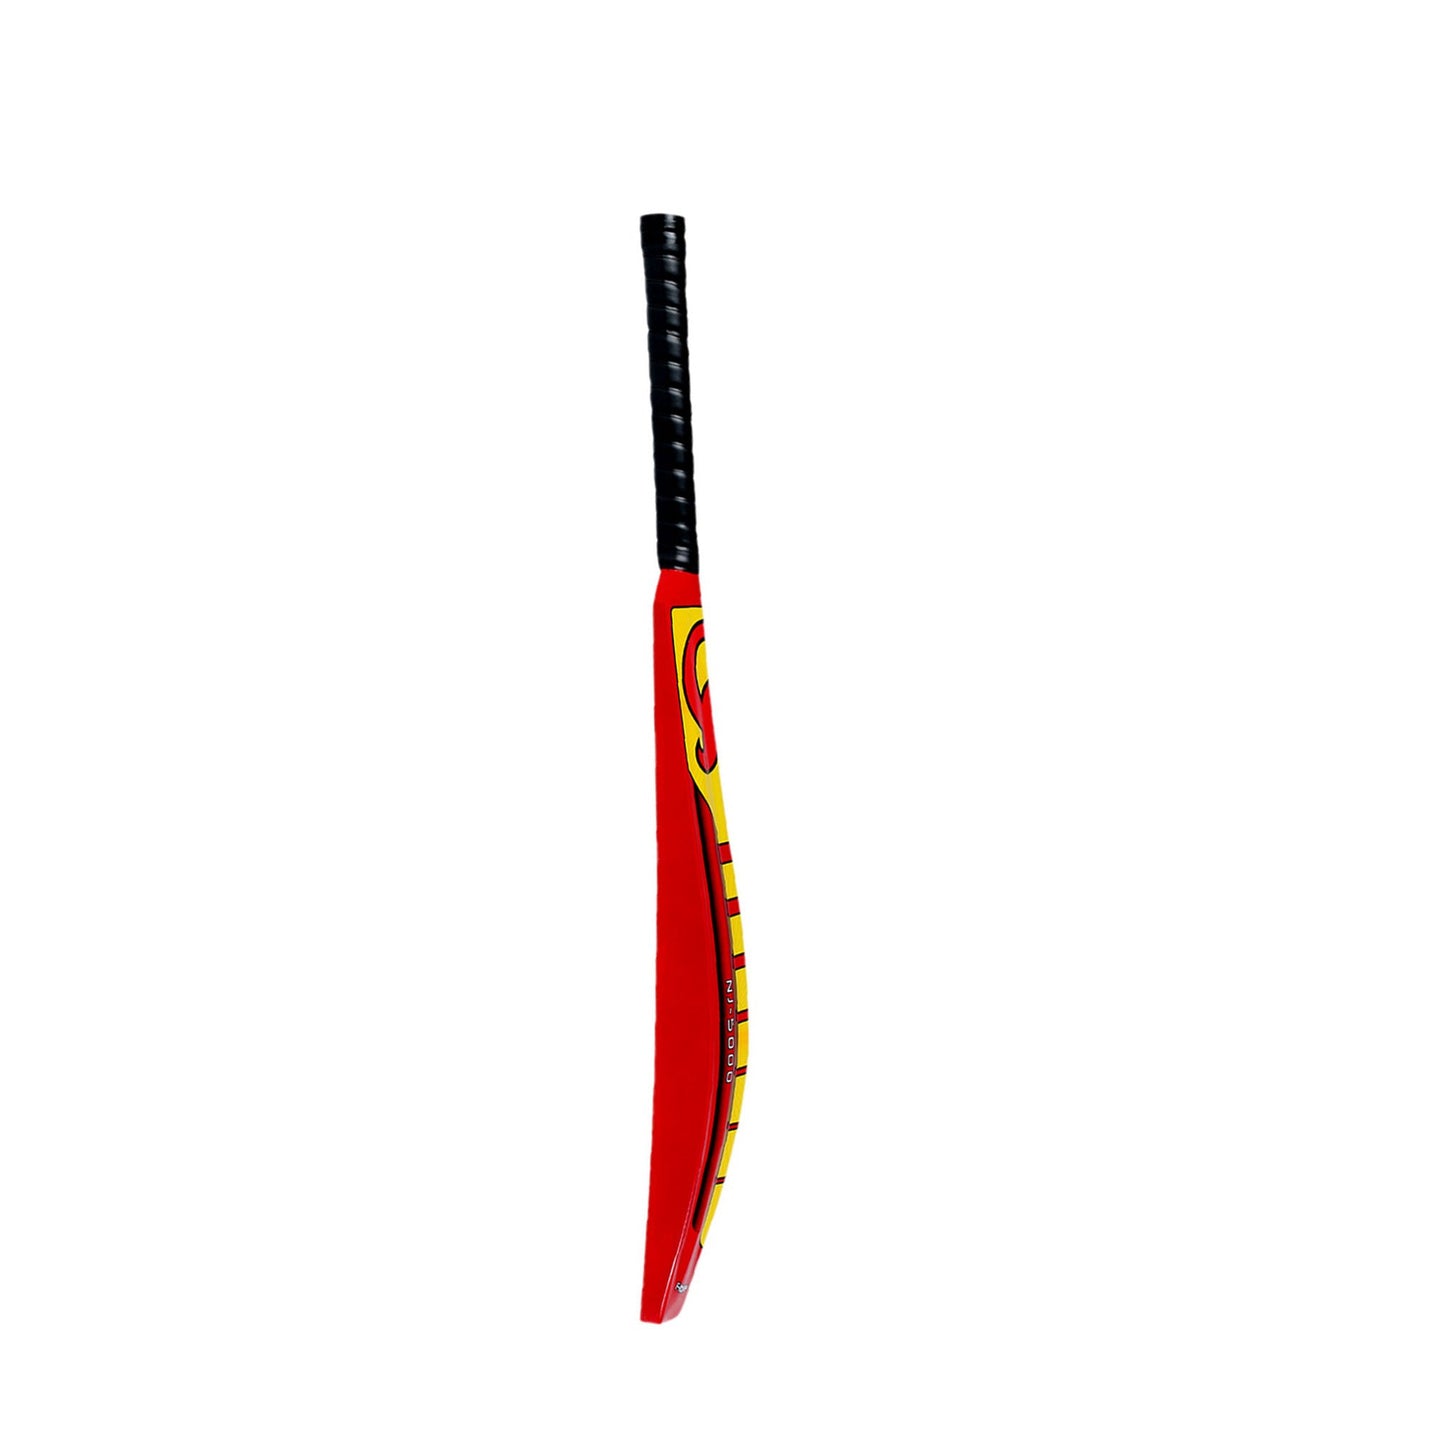 CA NJ-5000 Fiber Cricket Bat - SH